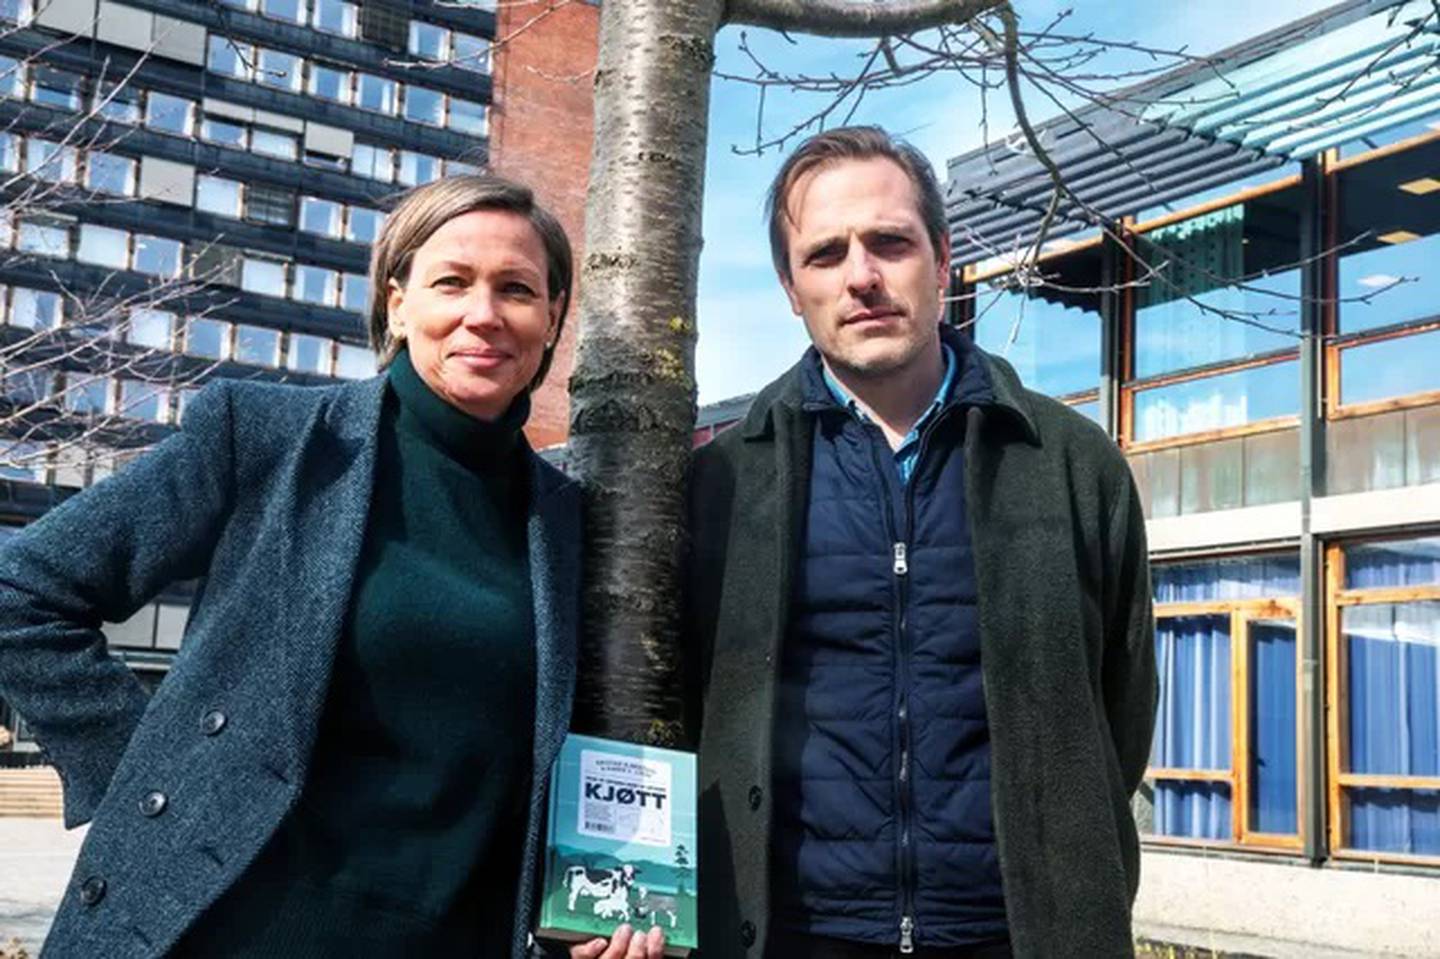 De to universitetsansatte forskerne Karen V. Lykke og Kristian Bjørkdahl har skrevet ei bok om kjøttproduksjonens og dyrevelferdens historie de siste årene.